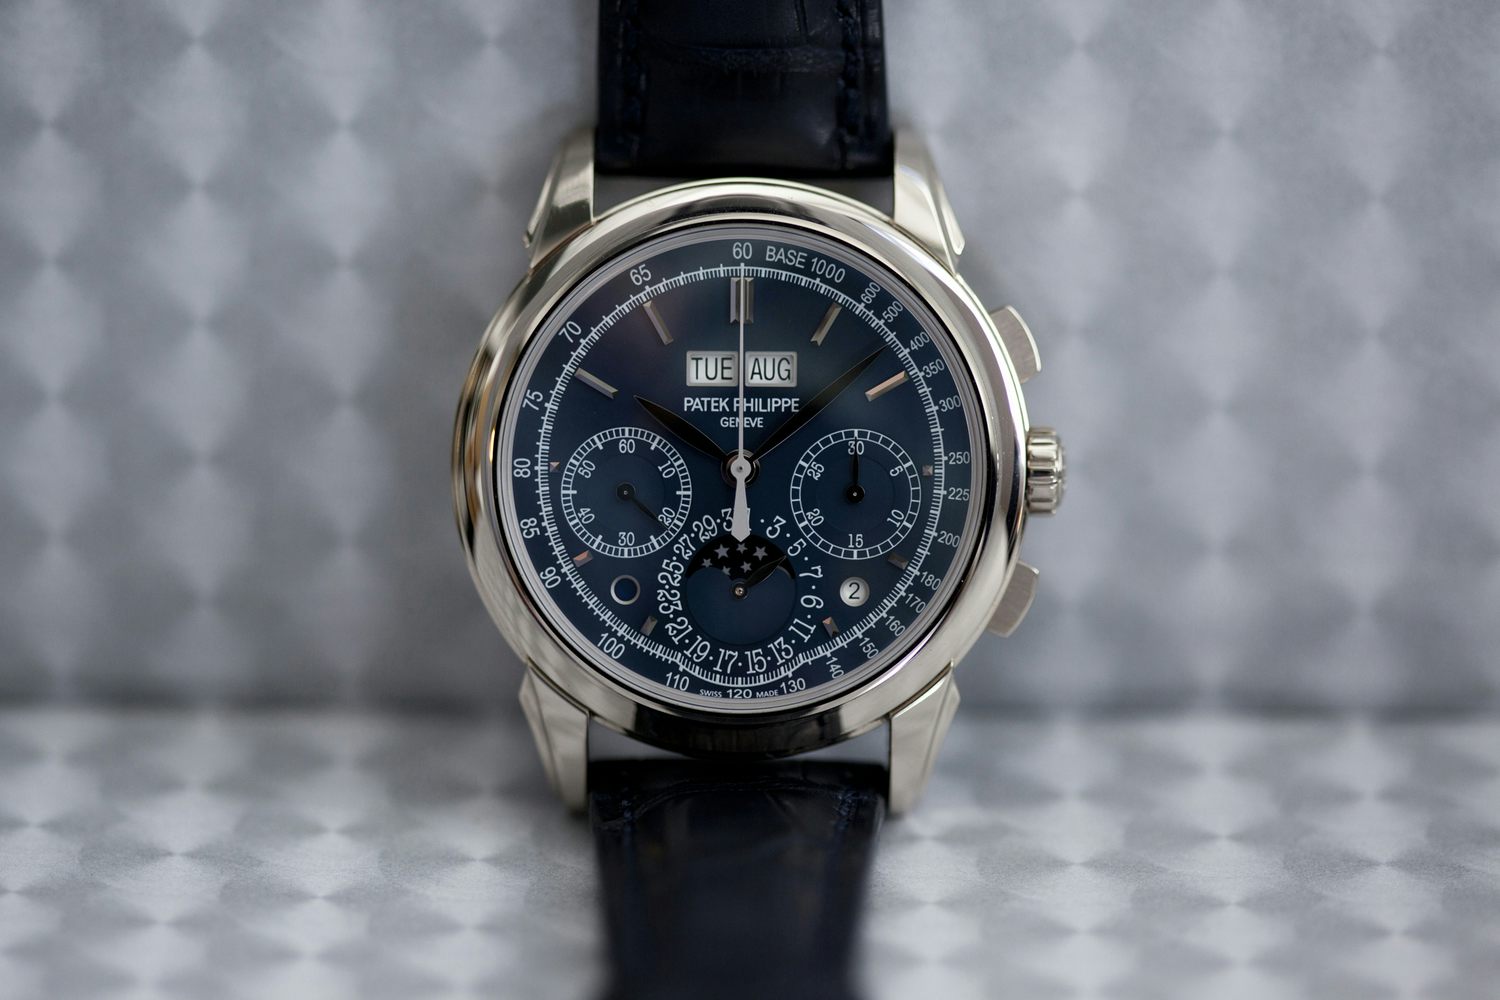 Đồng hồ Patek Philippe 5270G Perpetual Calendar là món quà đắt giá dành cho những người yêu thích đồng hồ cao cấp. Hãy cùng chiêm ngưỡng những đường nét tinh tế của chiếc đồng hồ này qua hình ảnh đẹp mắt.